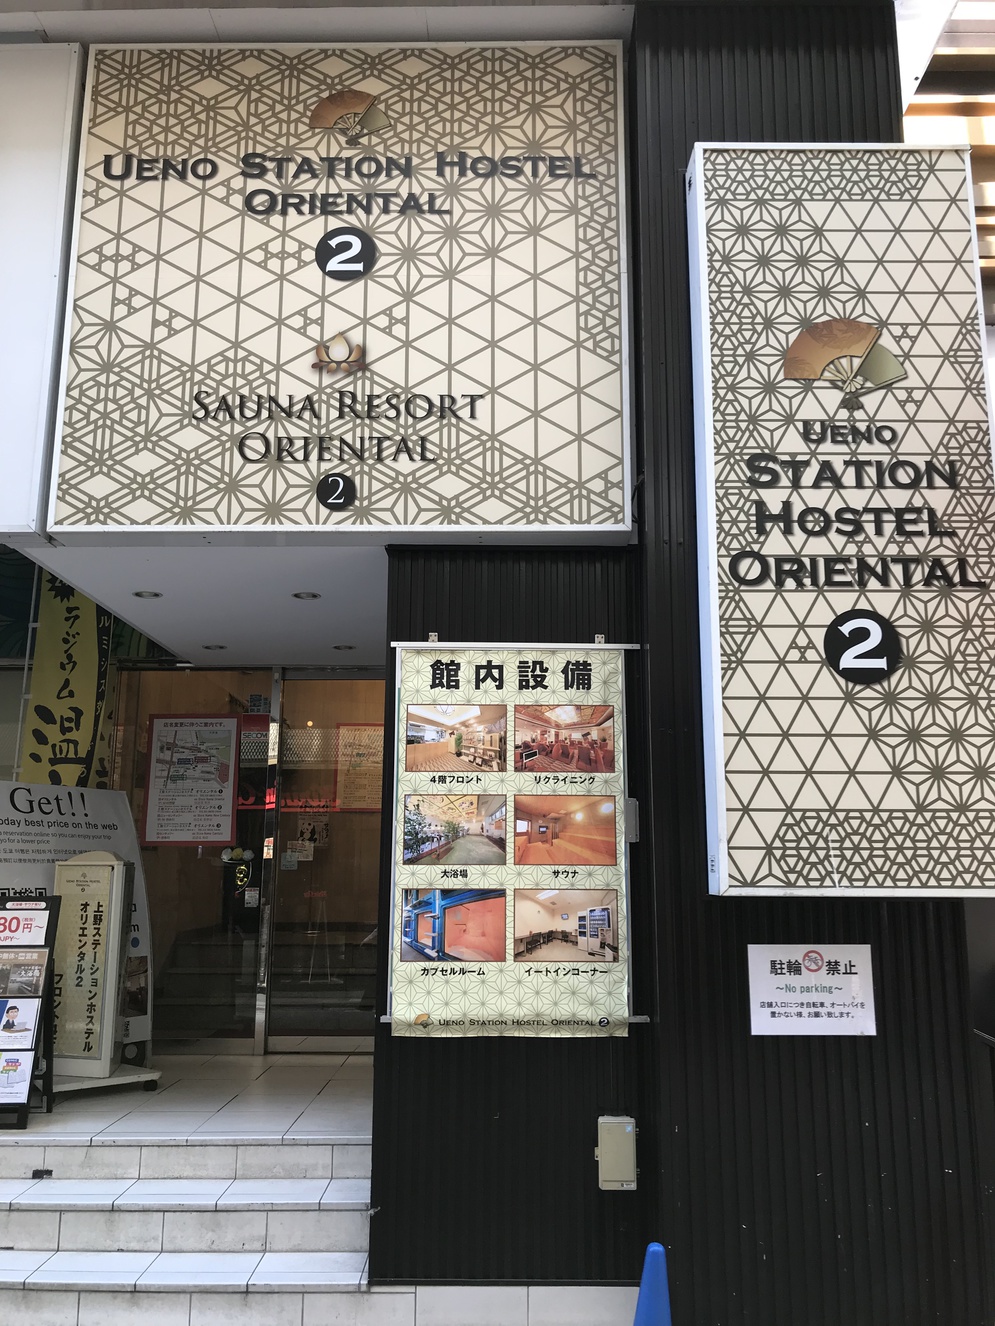 上野ステーションホステル オリエンタル 2 image